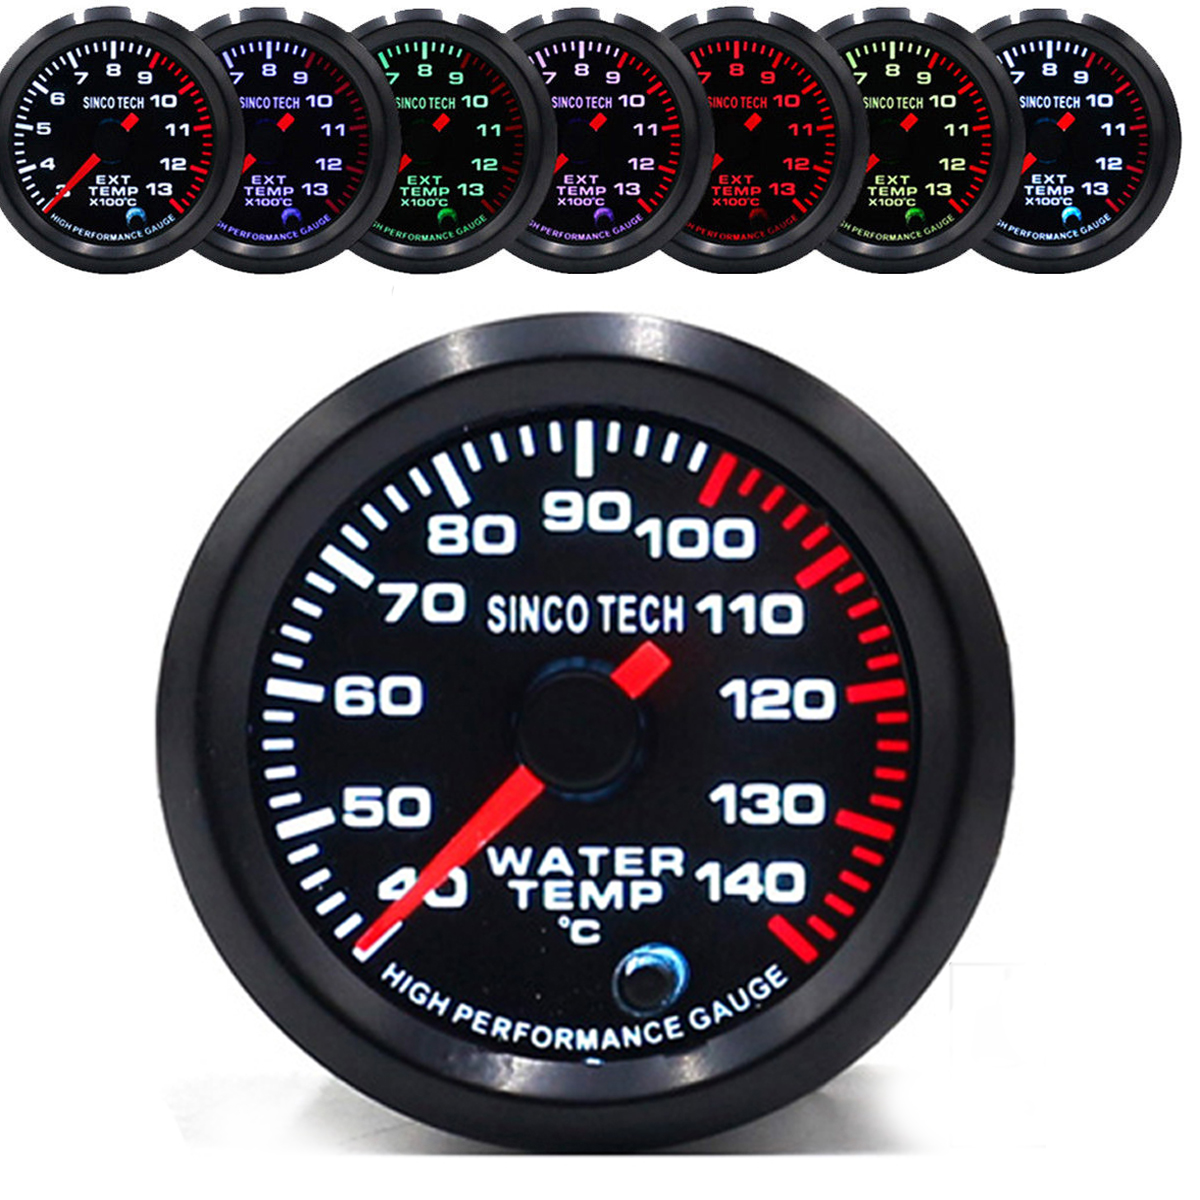 Racing Car Turbo/Boost/Egt Exhaust/Temp/Oil Pressure Gauge Meter 7 Colors